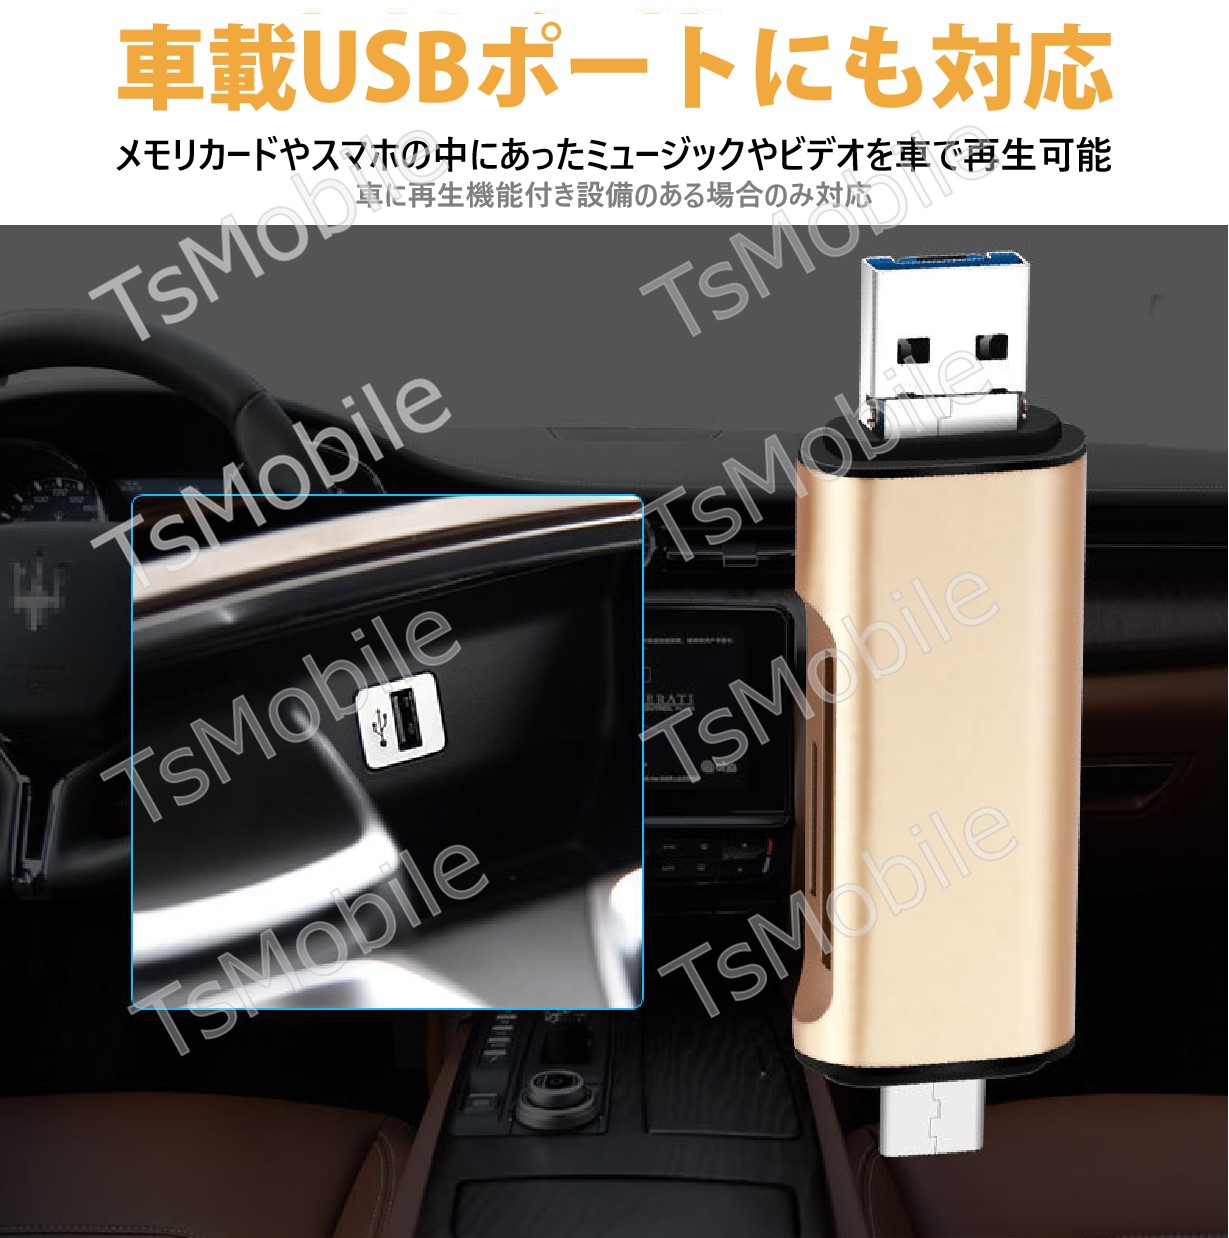 5in1 TypeC USB MicroUSB SD TFカードリーダー OTG変換コネクタ Macbook メモリカードデータ移行 バックアップ スマホ 保存移動Android タブレット307378